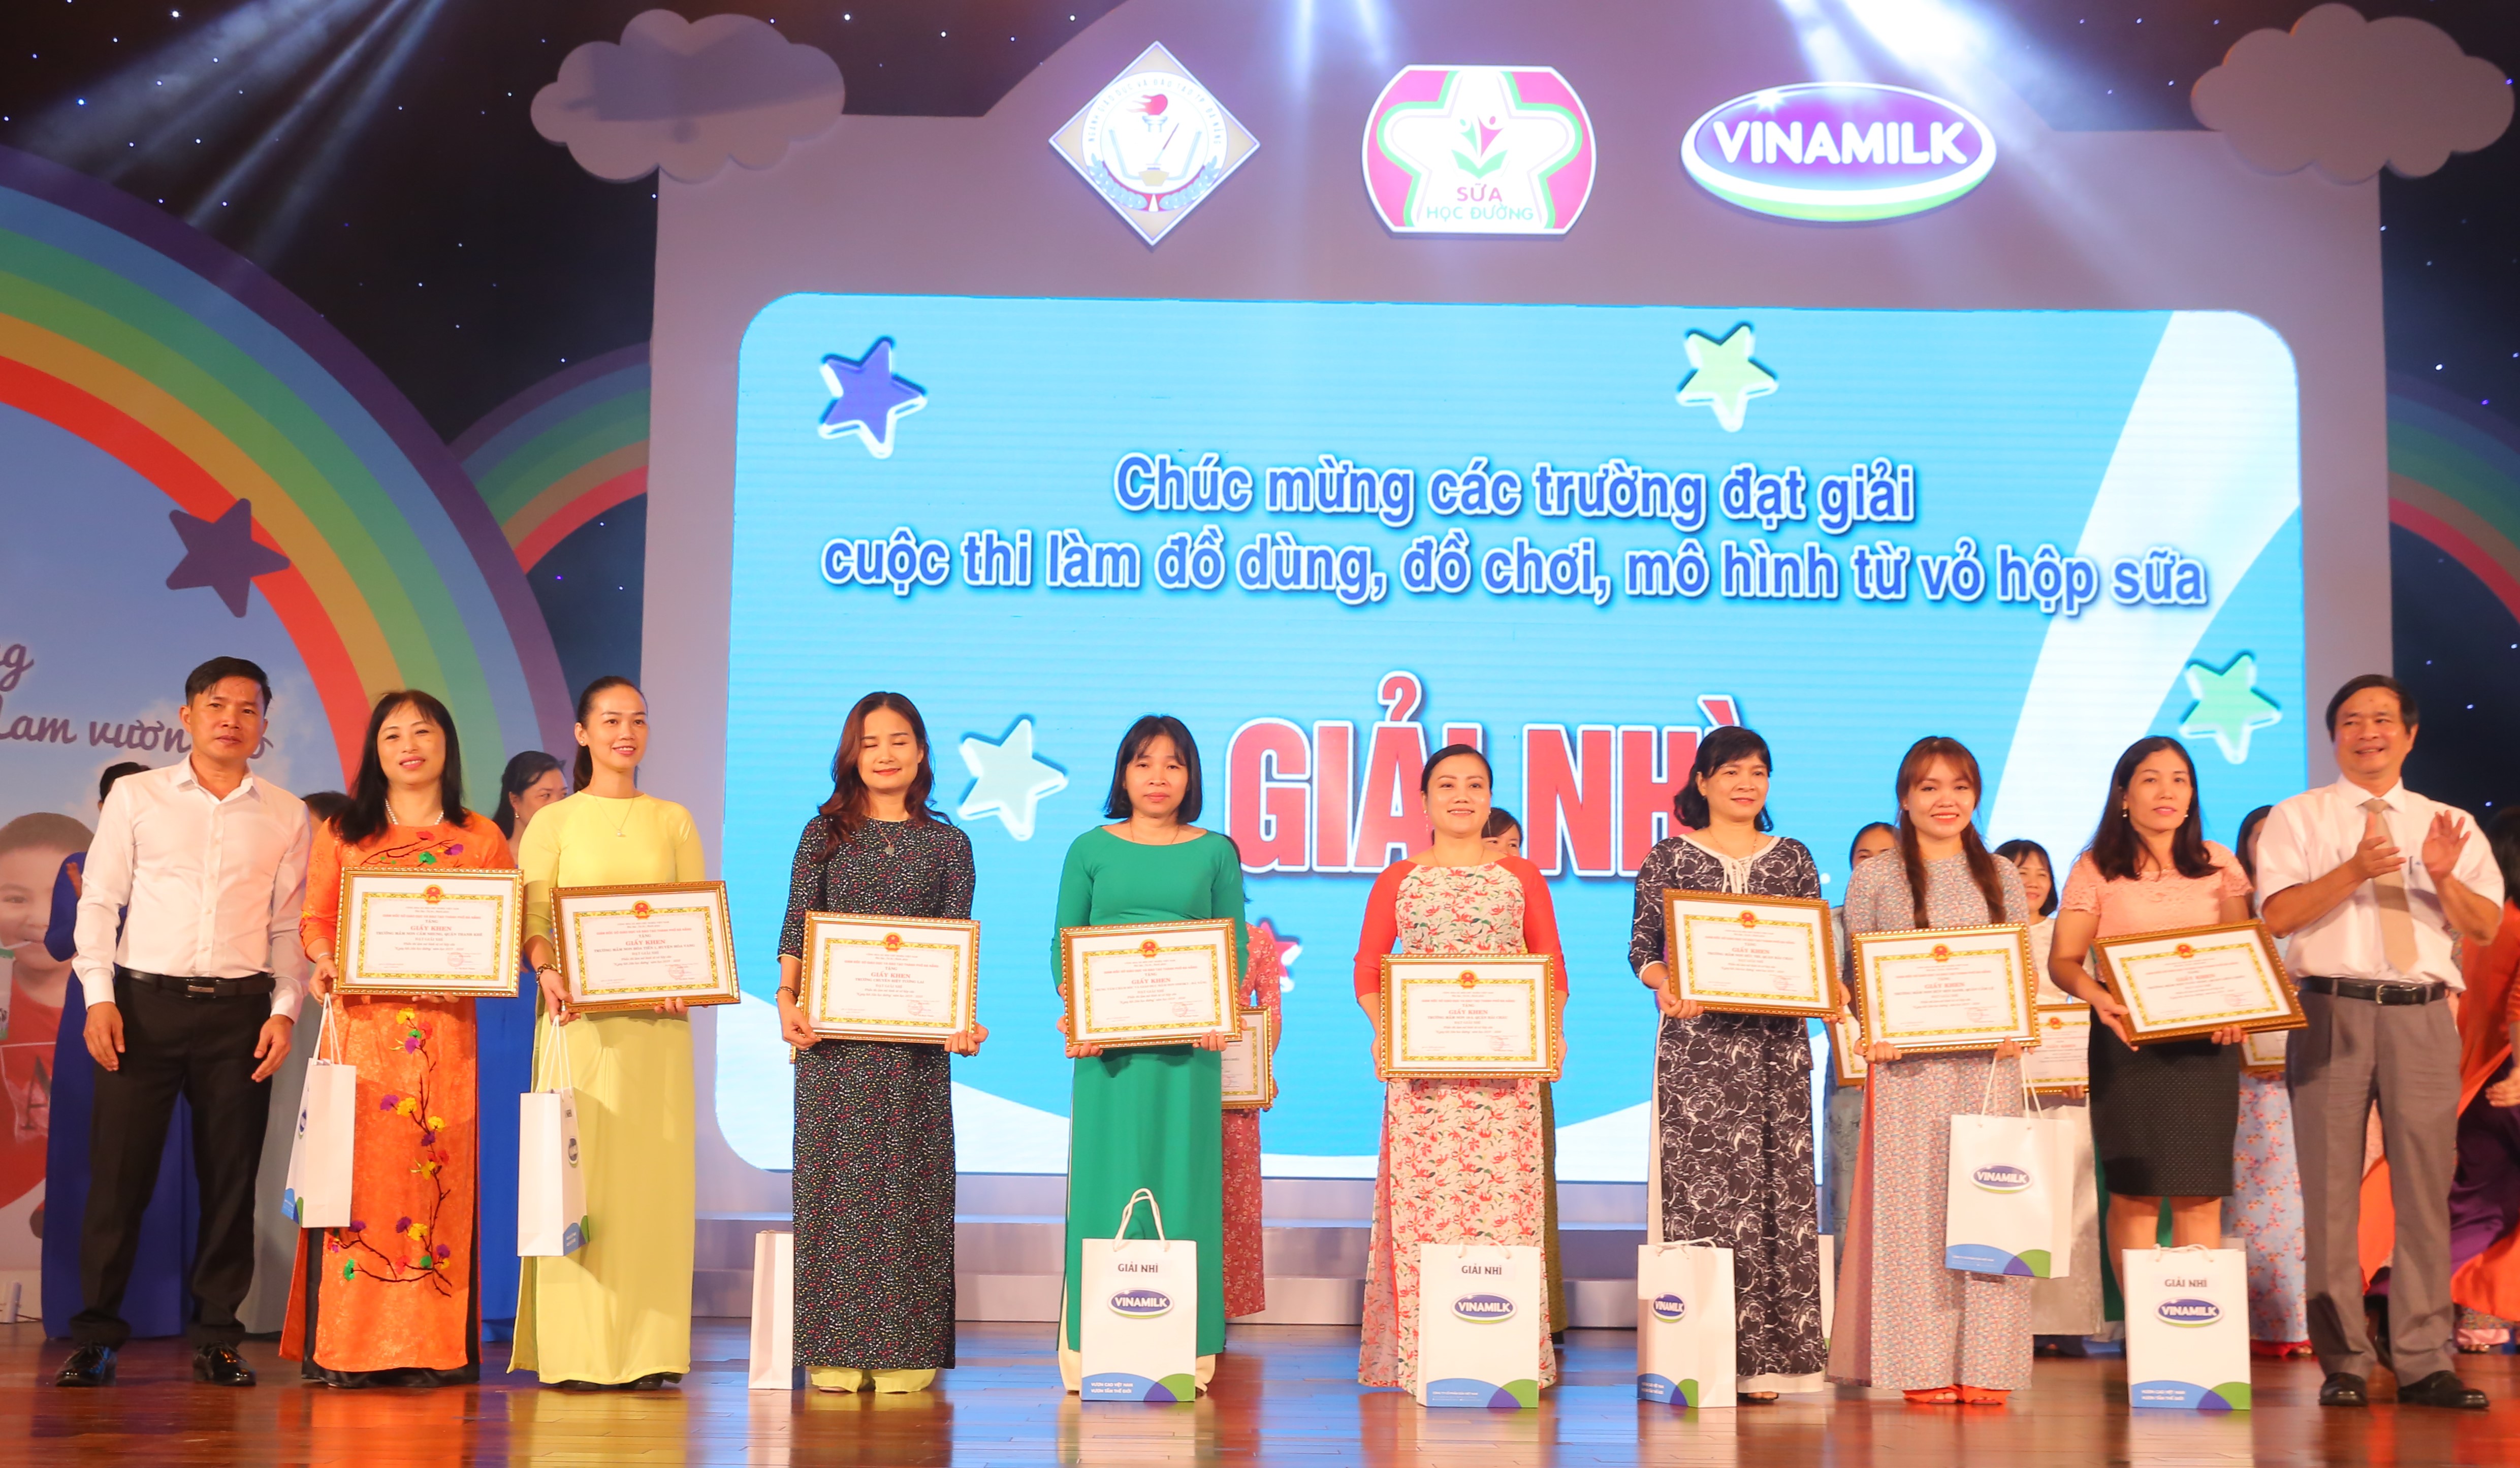 Đại diện Ban tổ chức trao tặng giấy khen và phần thưởng cho các trường mầm non đạt giải Nhì cuộc thi làm đồ dùng, đồ chơi, mô hình từ vỏ hộp sữa.